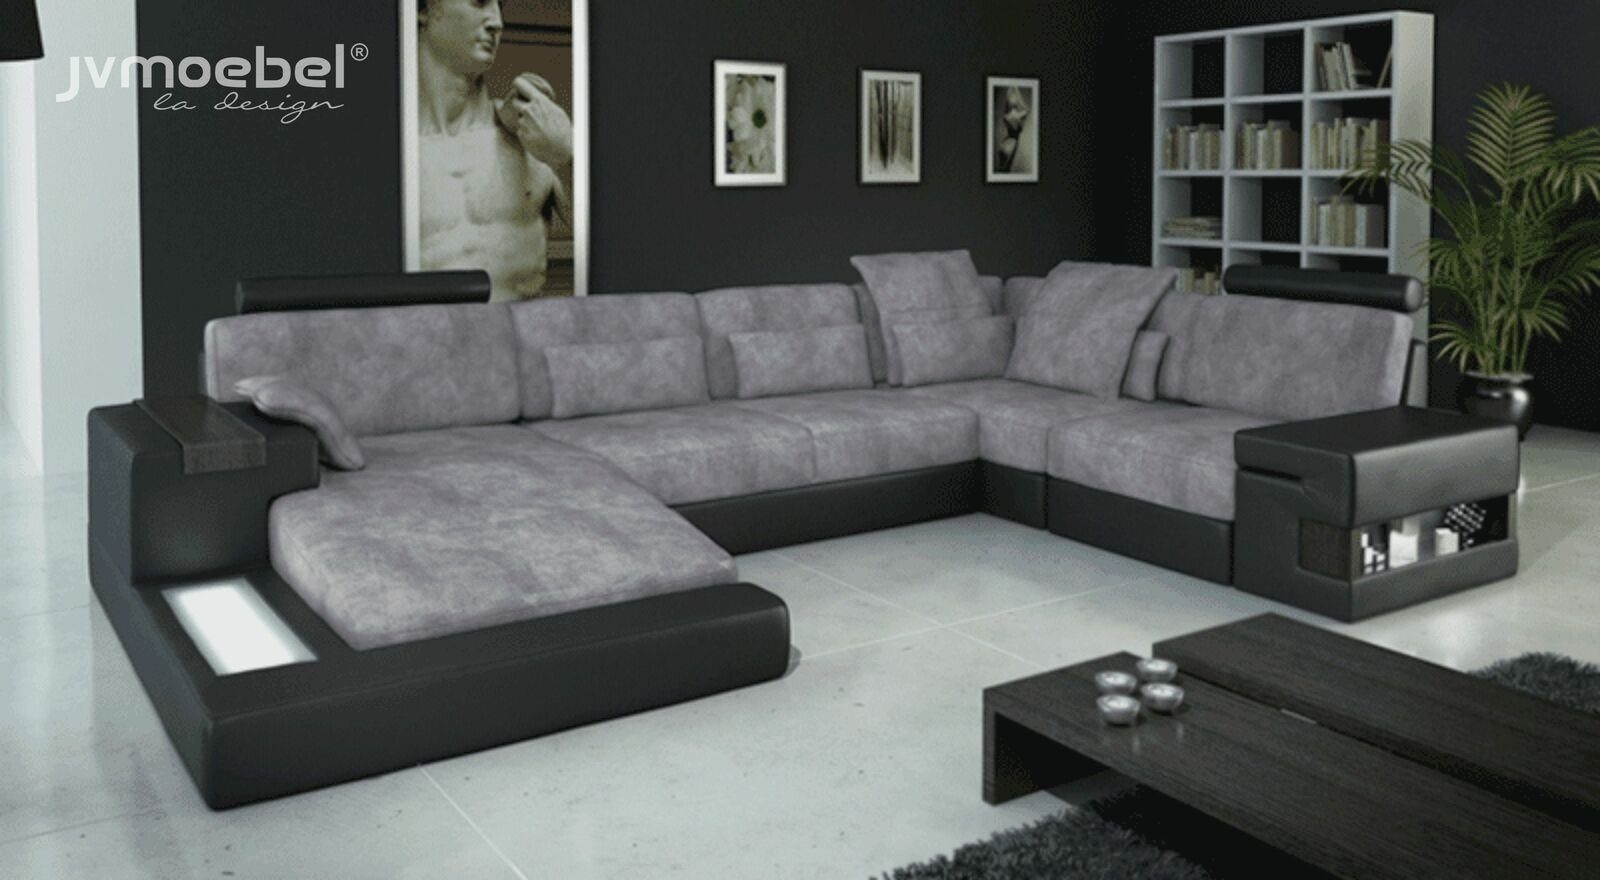 JVmoebel Ecksofa, Designer Moderne Luxus Textil Sofa U-Form Möbel mit Bett Funktionen | Ecksofas